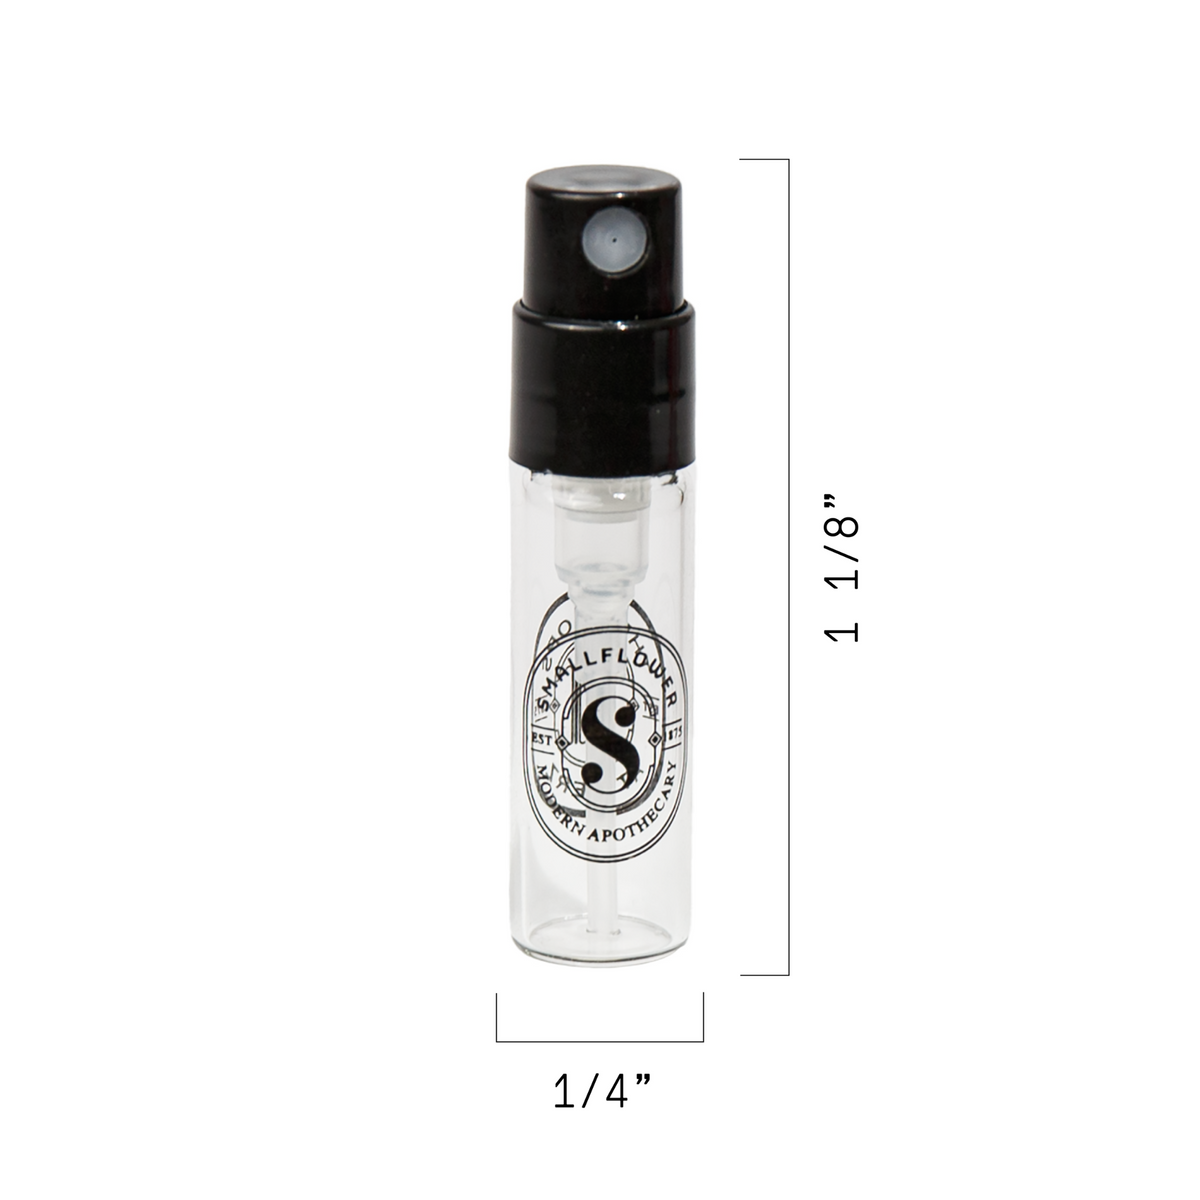 L'Artisan Parfumeur Sample - Crepusculum Mirabile EDP (1 ml vial) #10084448